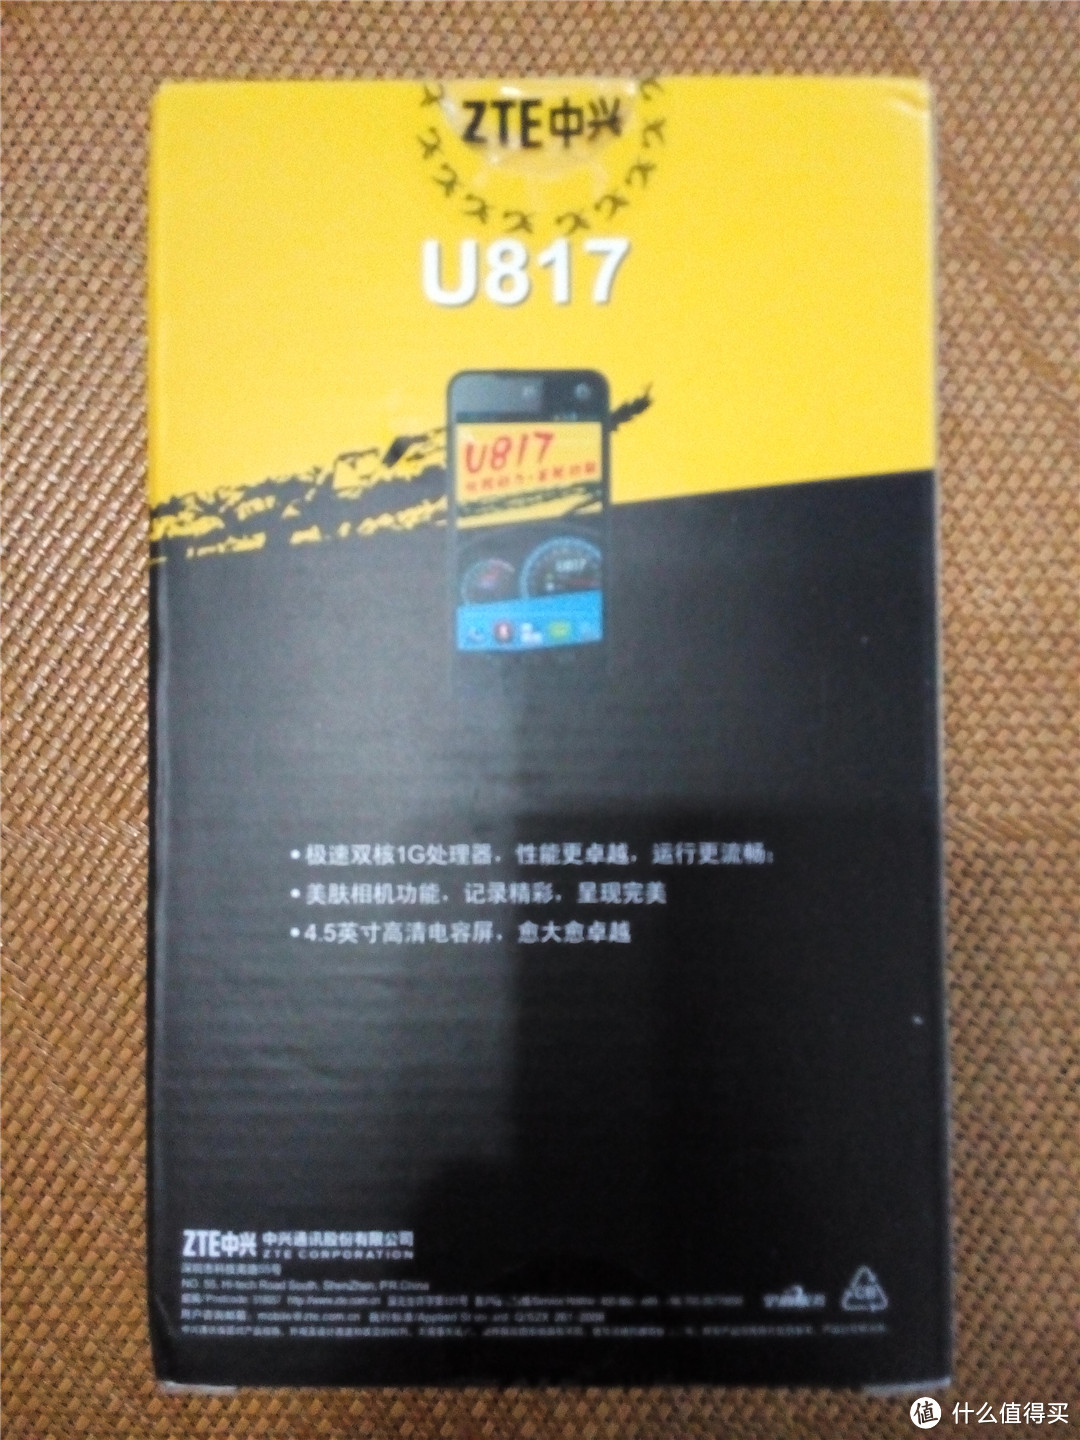 中兴 U817 移动 3G 手机